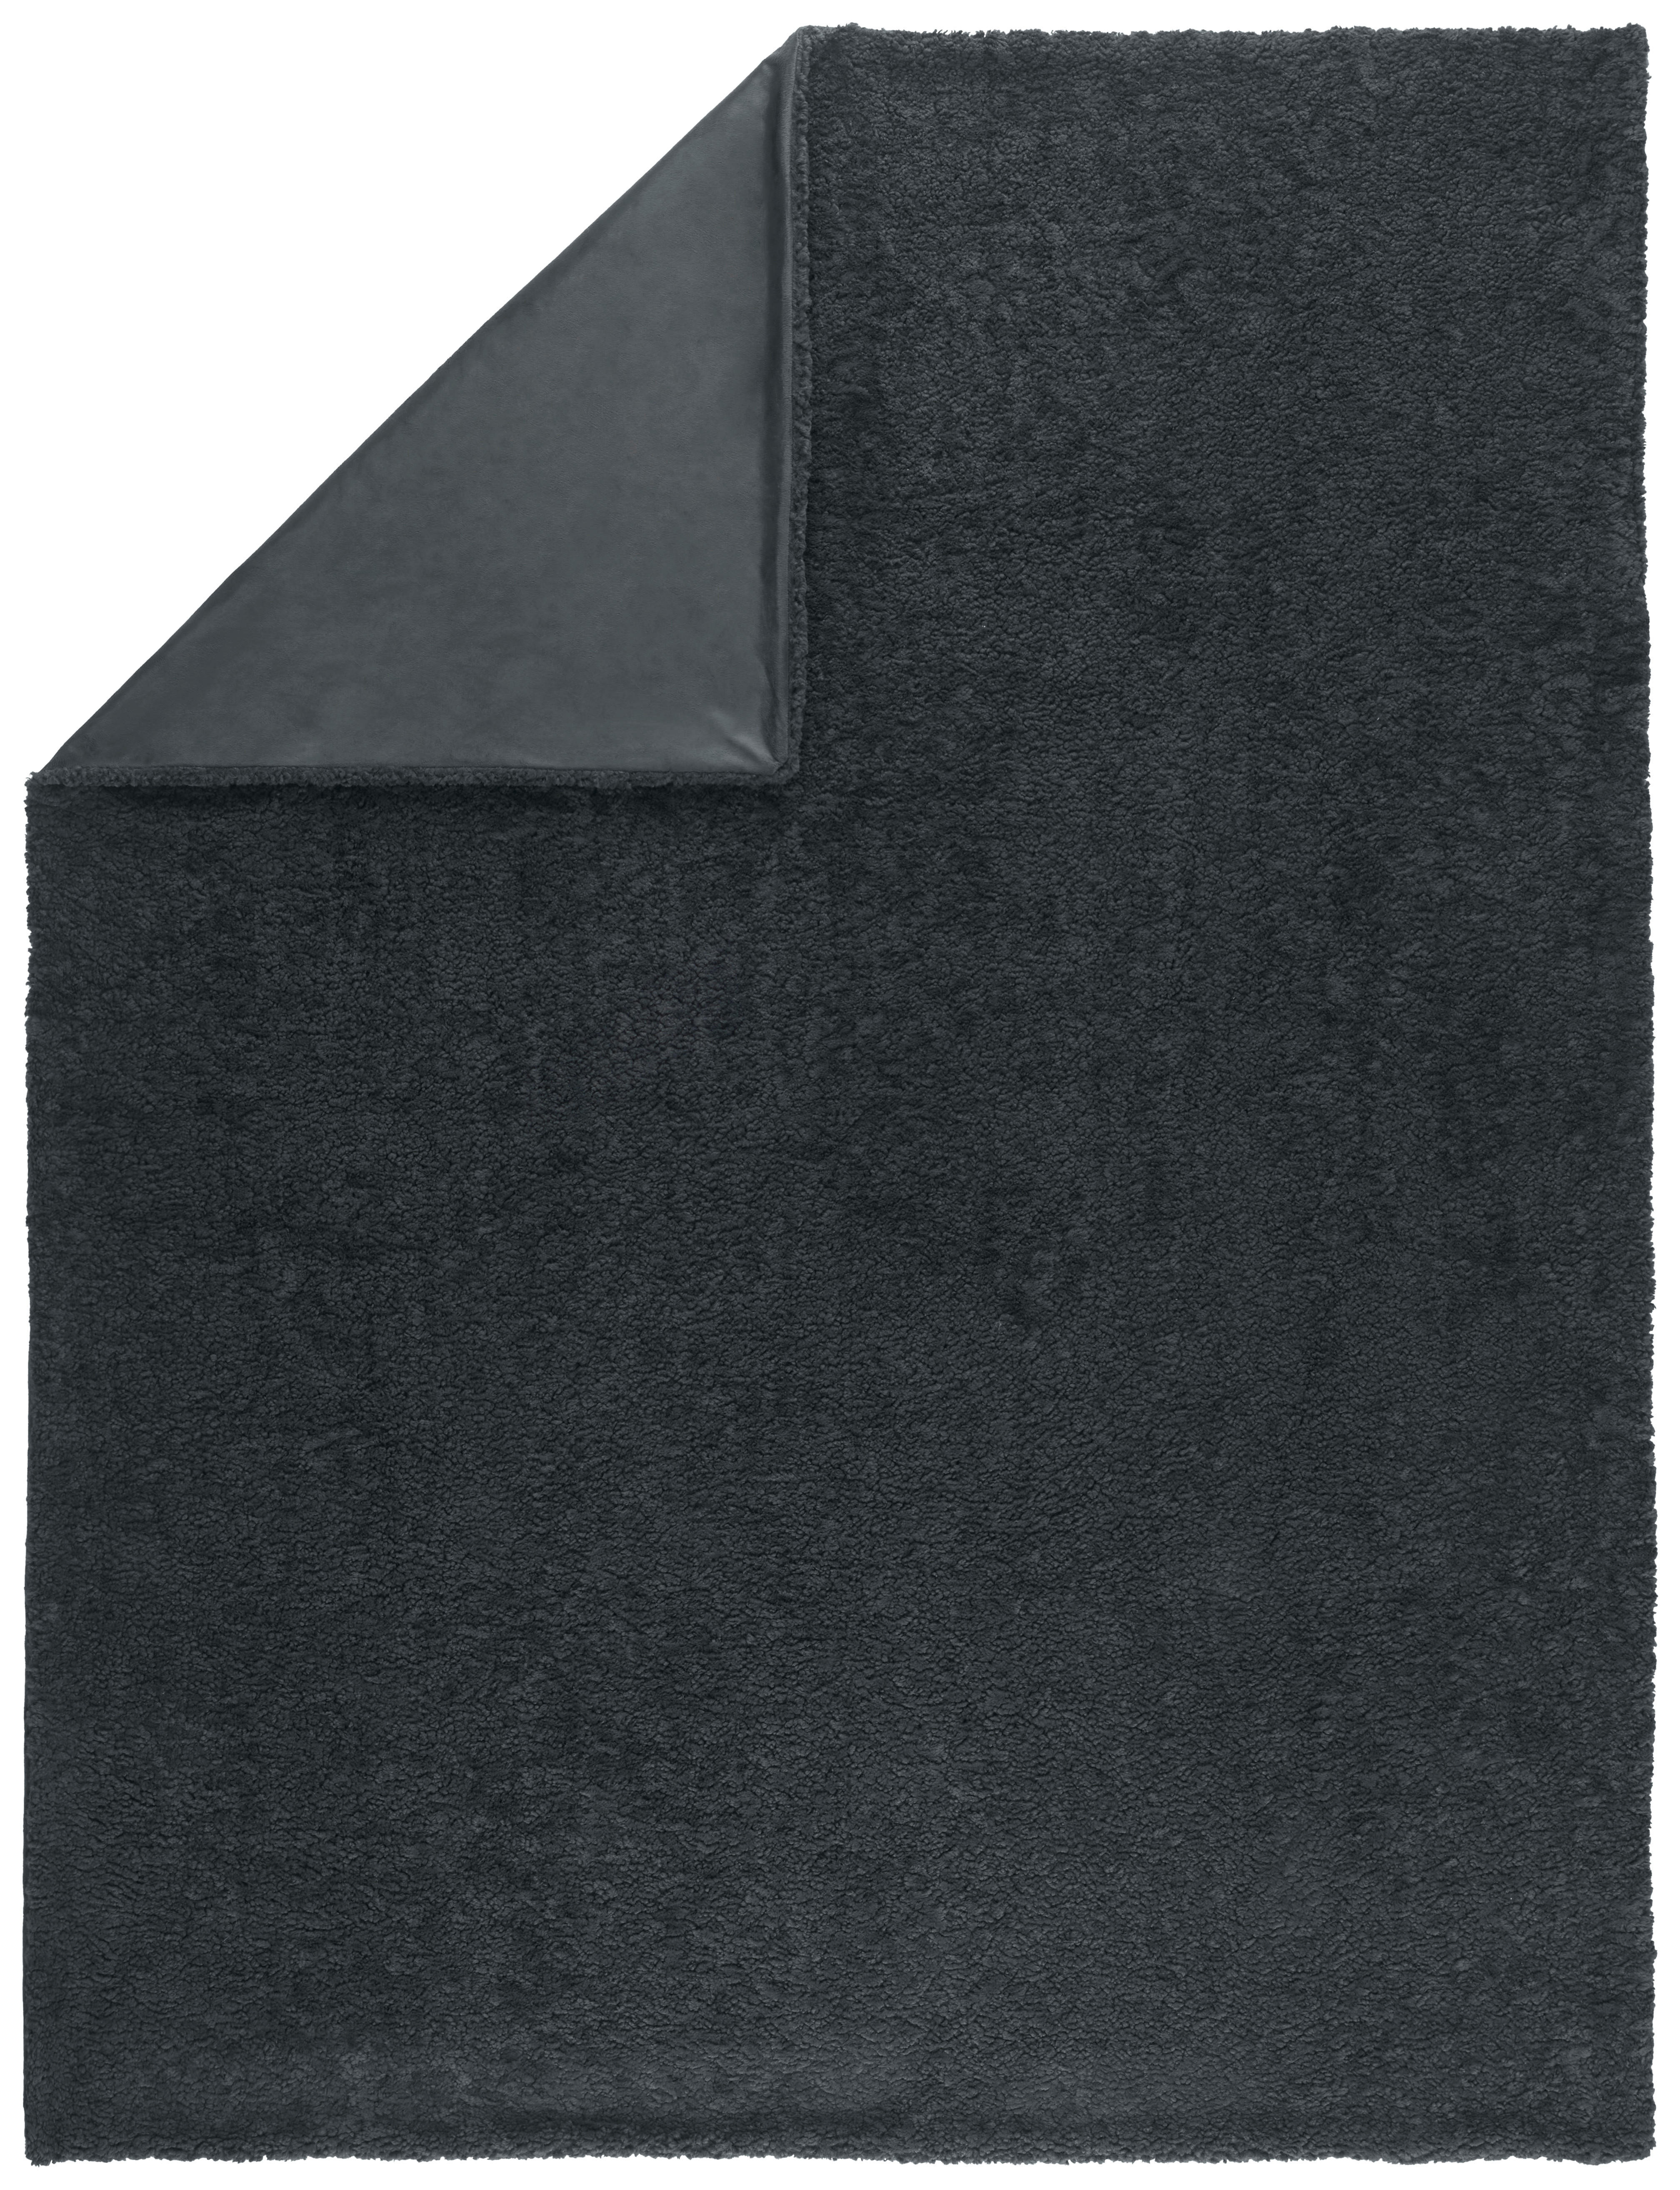 Novel MĚKKÁ DEKA, polyester, 150/200 cm - antracitová